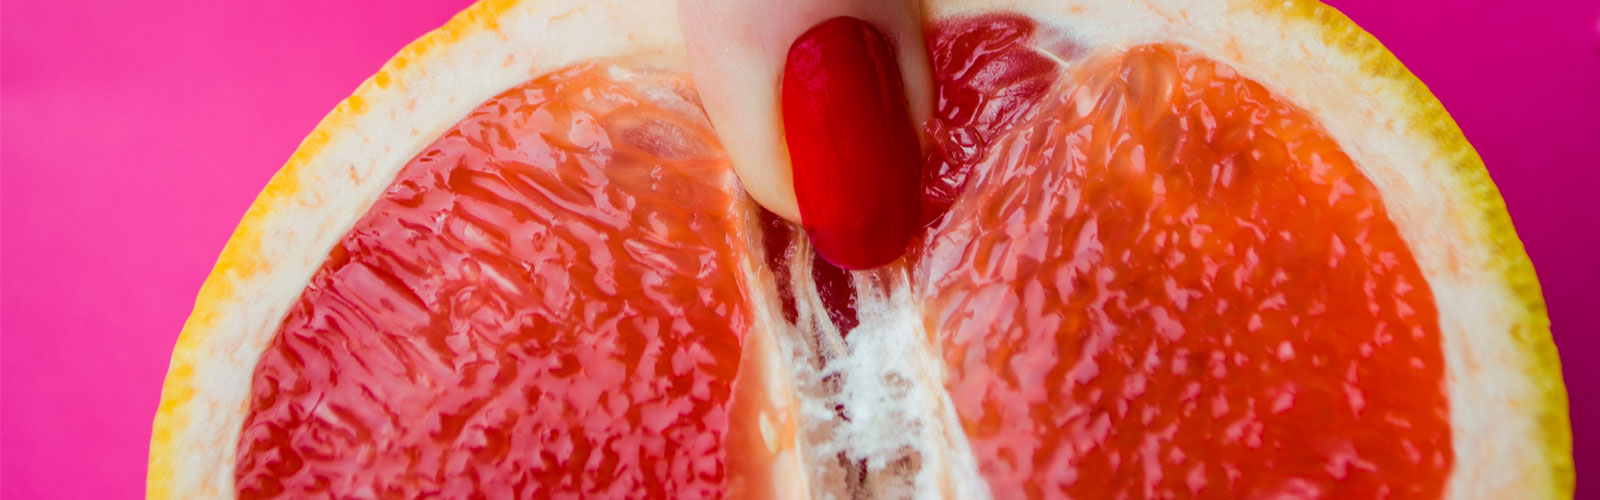 Woman's finger on sliced orange